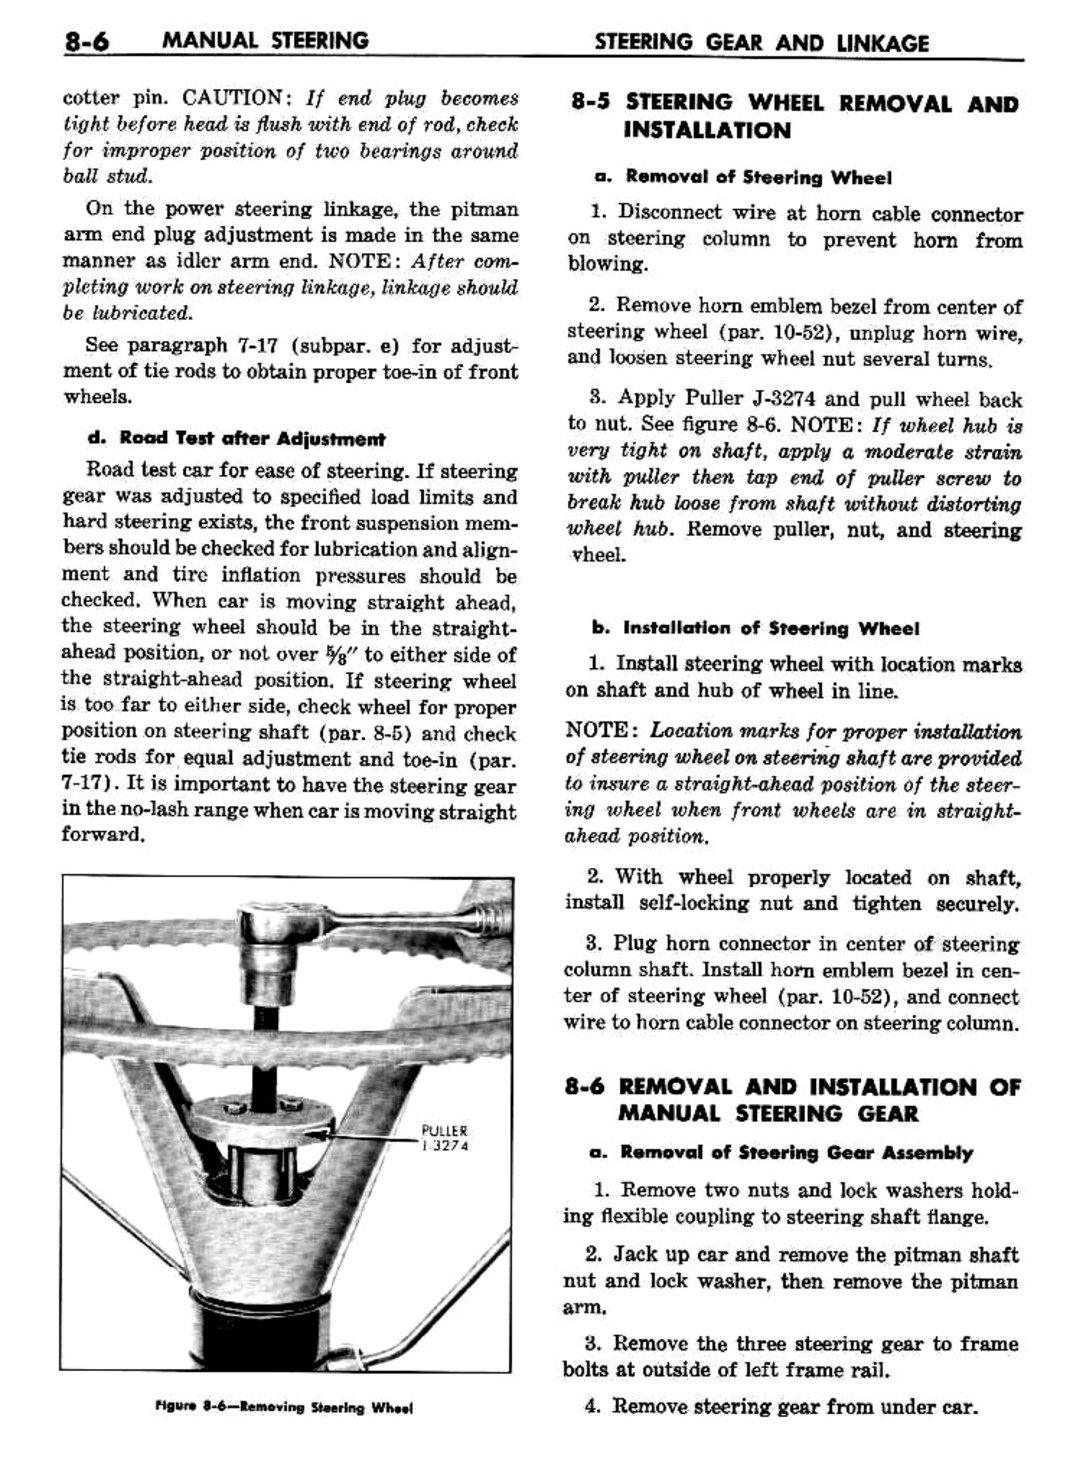 n_09 1960 Buick Shop Manual - Steering-006-006.jpg